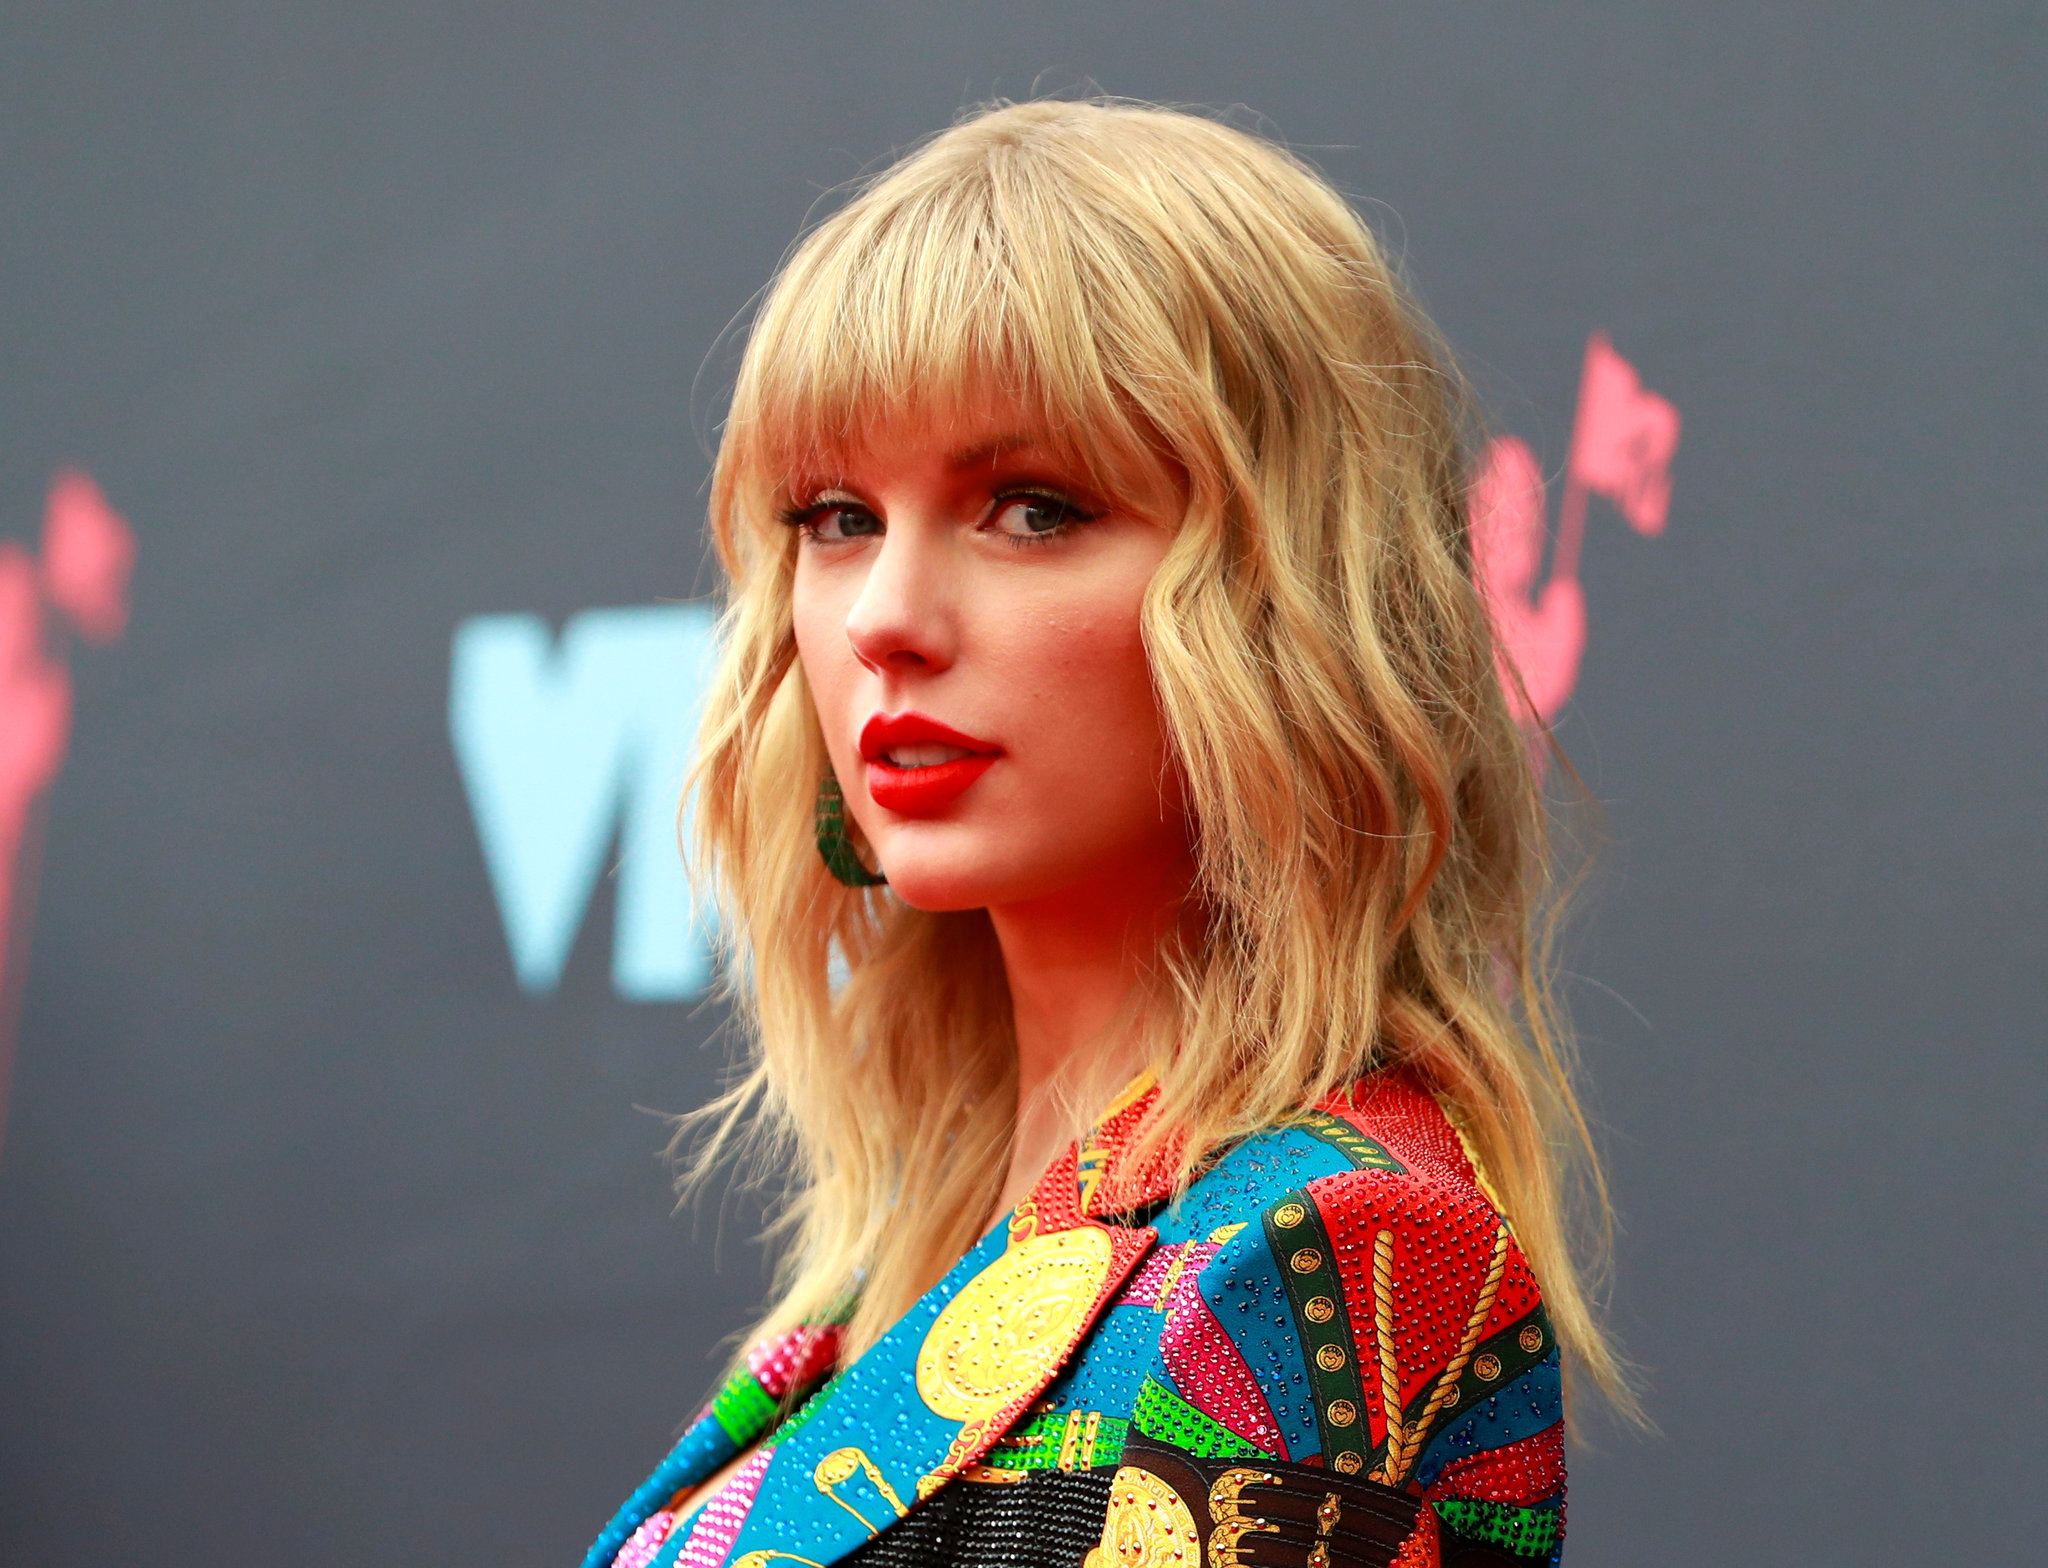 ¿Por qué es un deporte habitual entre los famosos el odiar a Taylor Swift?